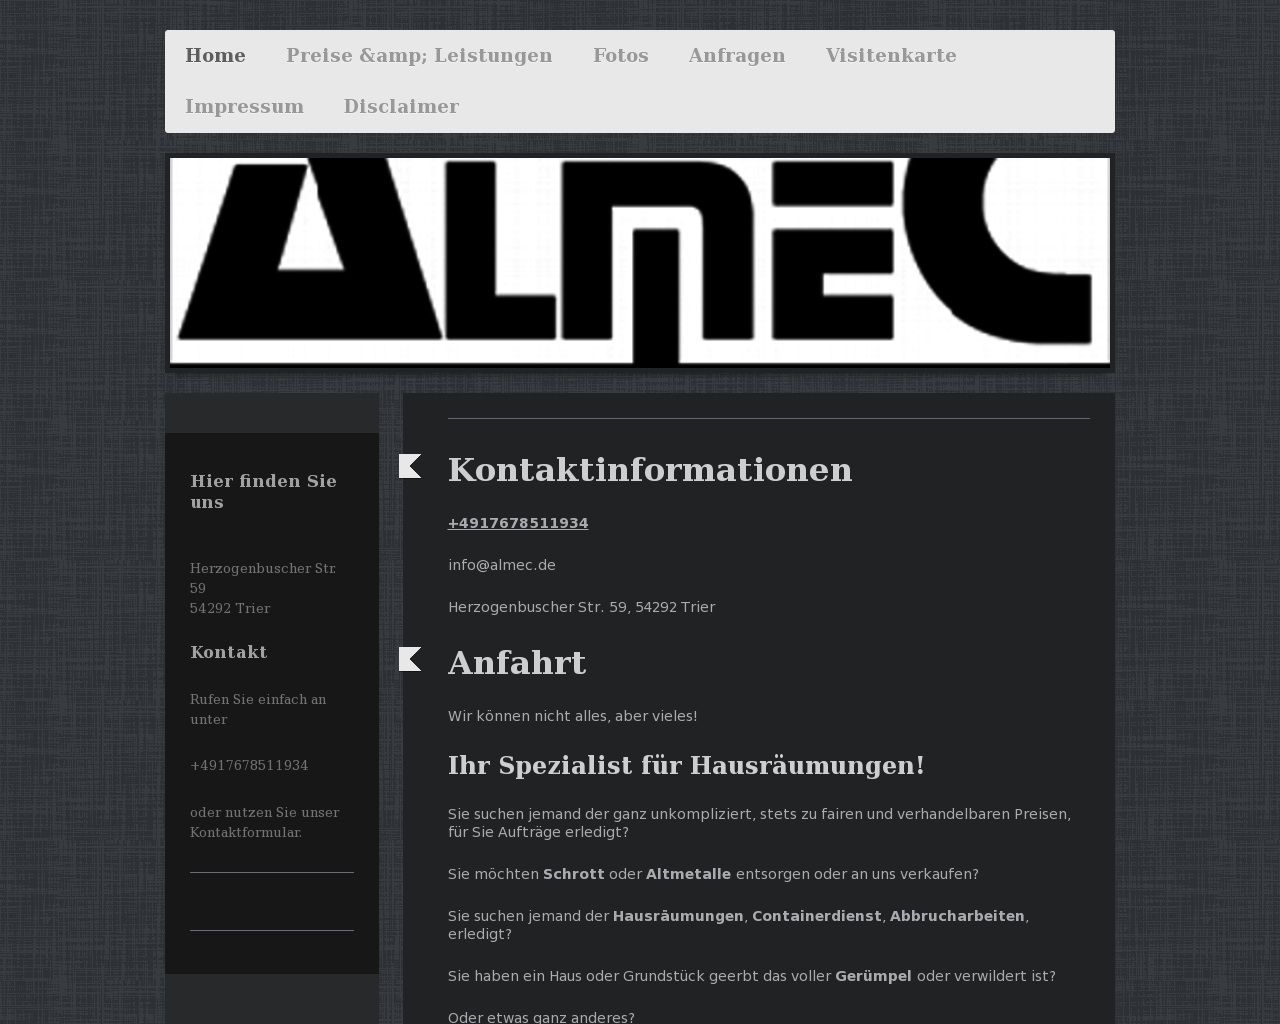 Bild Website almec.de in 1280x1024